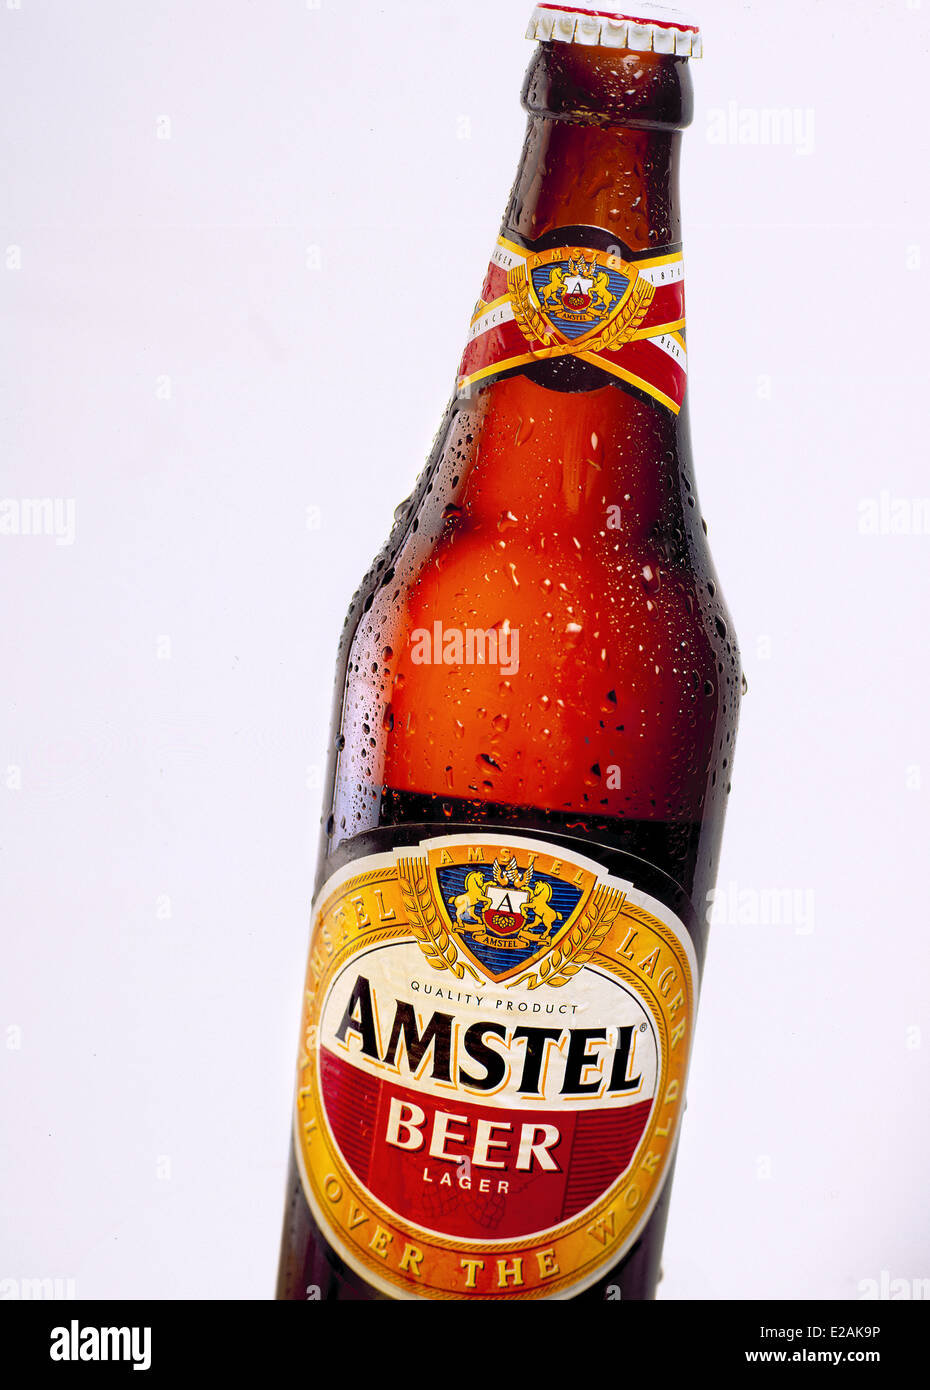 Amstel lager beer, bottle Stock Photo